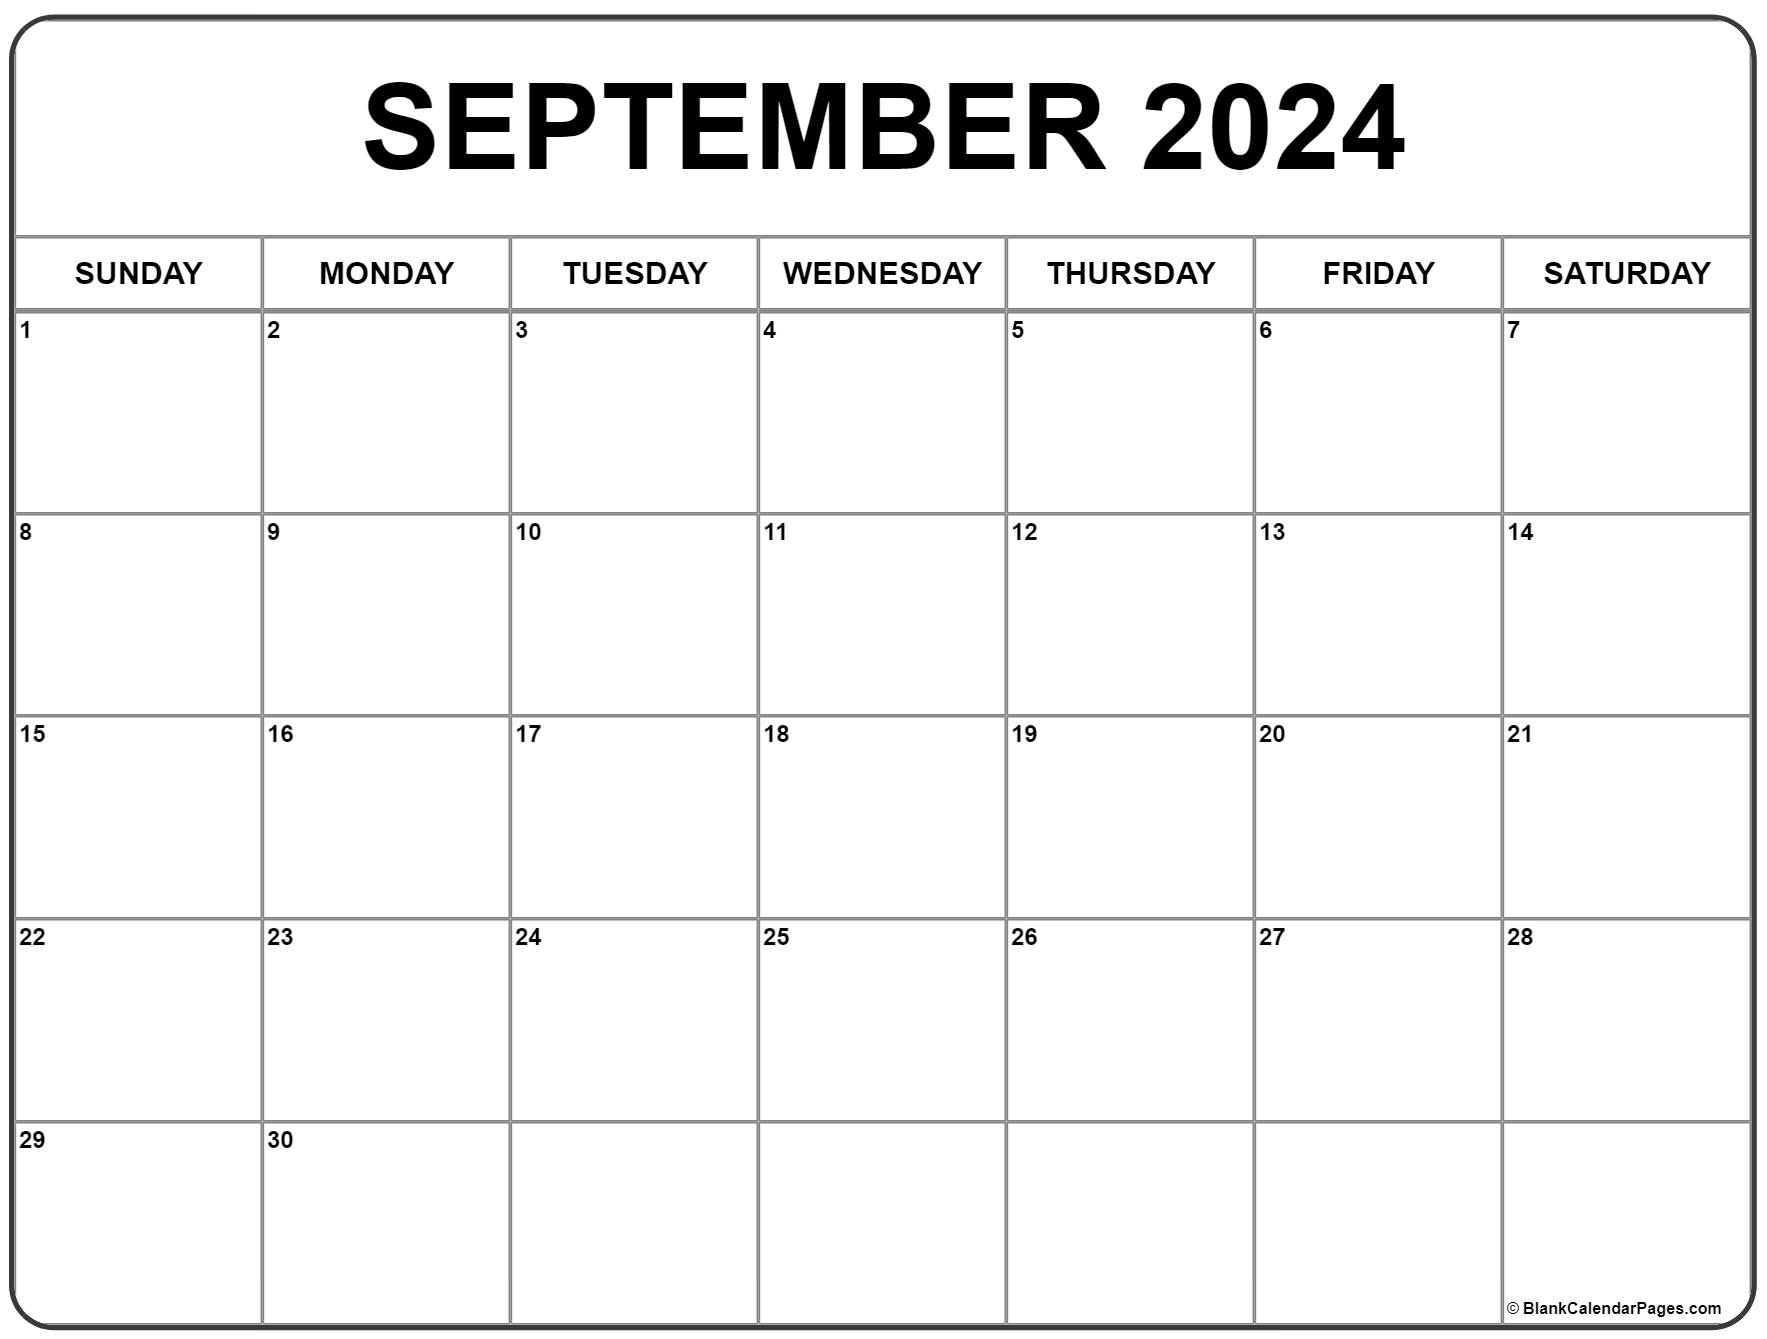 September 2022 Calendar Free Printable September 2022 Calendar | Free Printable Calendar Templates